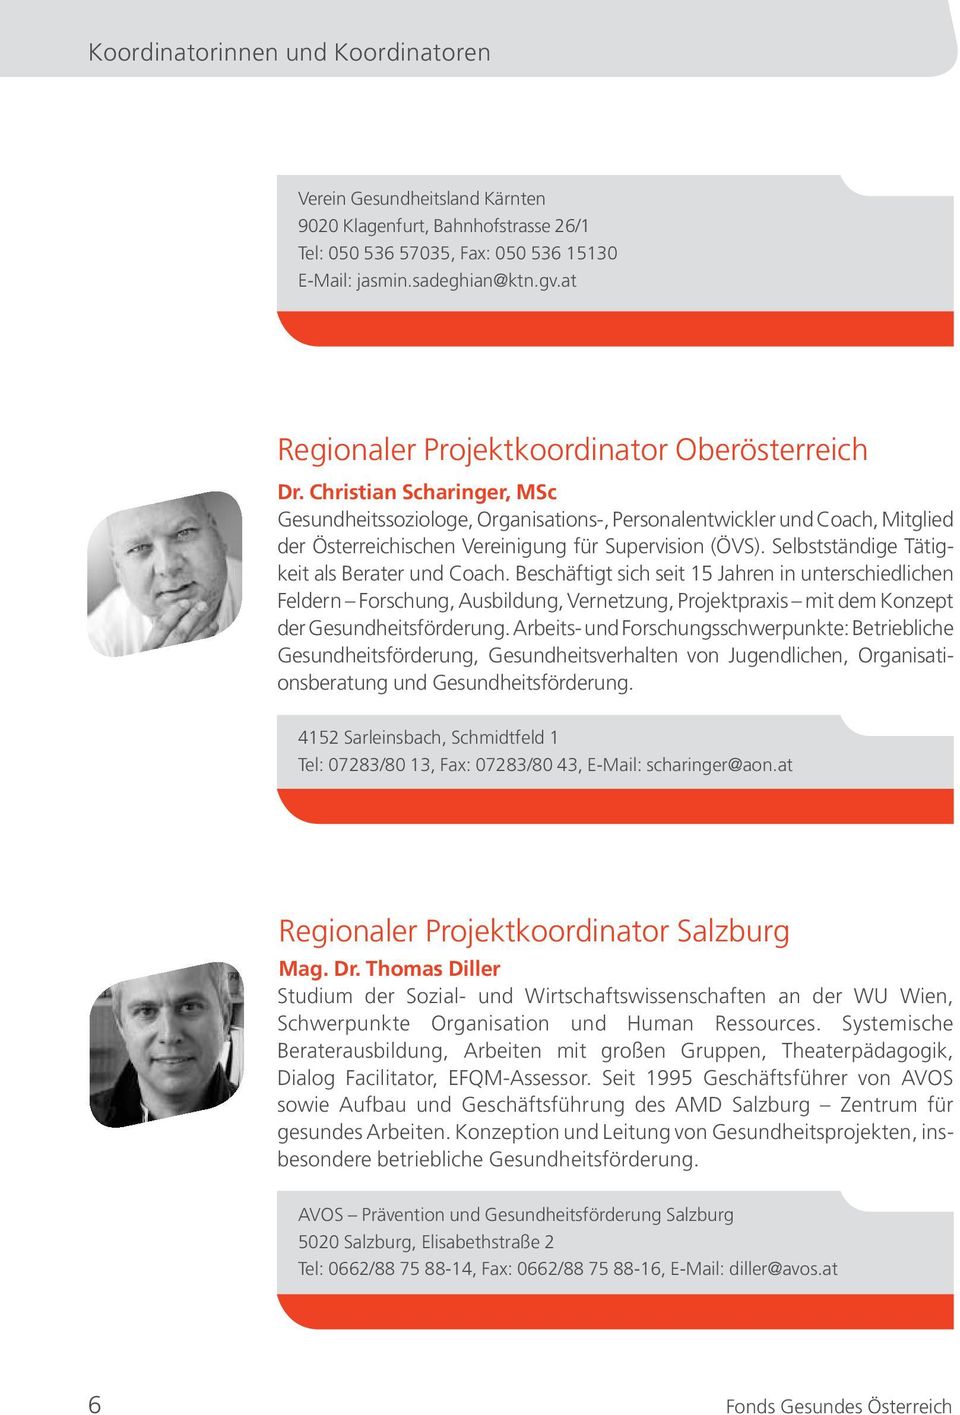 Christian Scharinger, MSc Gesundheitssoziologe, Organisations-, Personalentwickler und Coach, Mitglied der Österreichischen Vereinigung für Supervision (ÖVS).